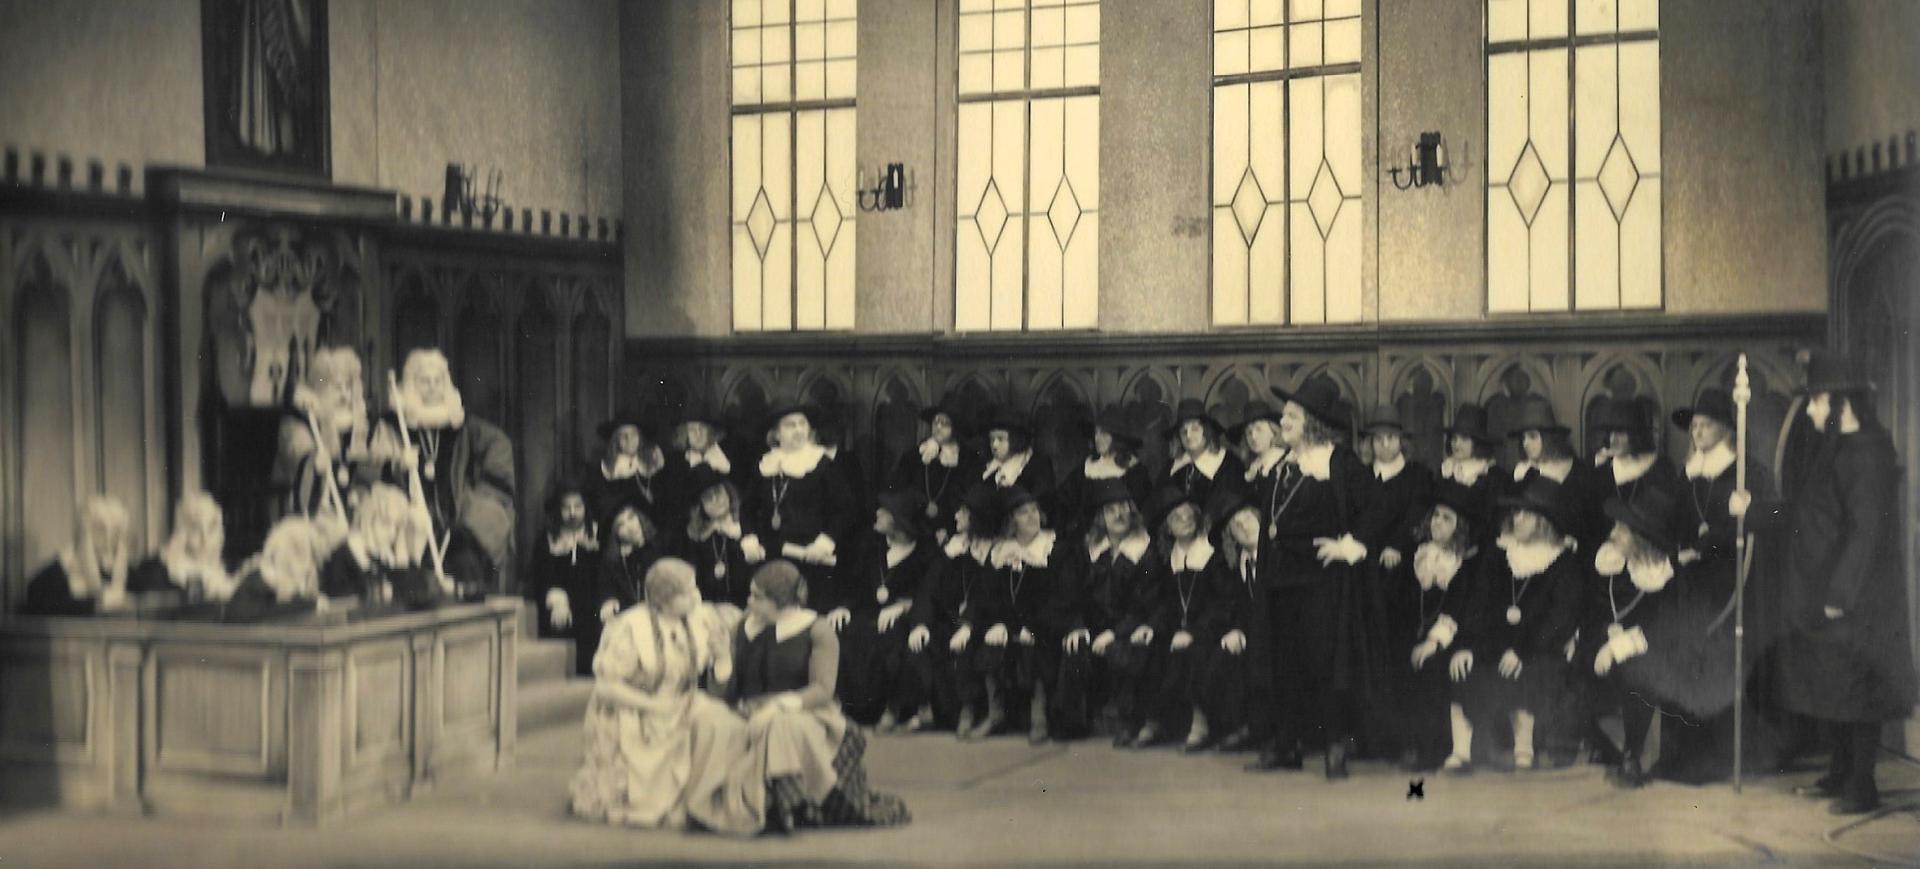 Gineral vun Werth - Divertissementchen 1937 - Chor und Solisten in Szene